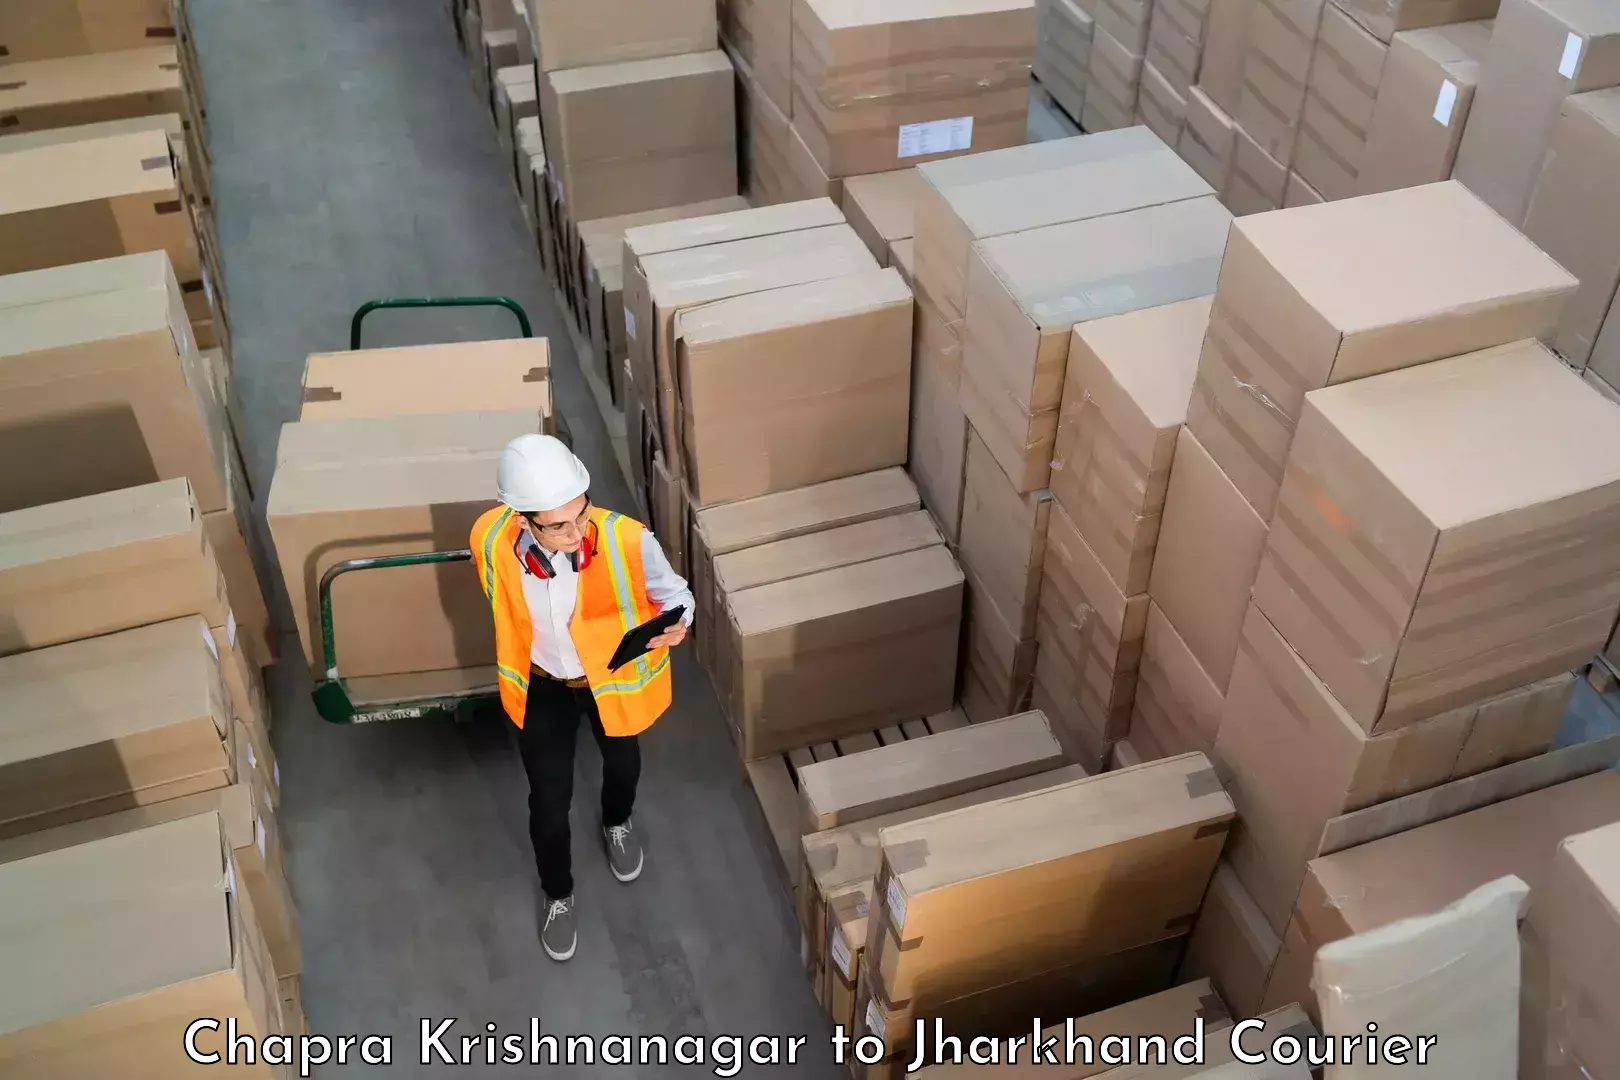 Luggage shipment tracking Chapra Krishnanagar to Ghatshila